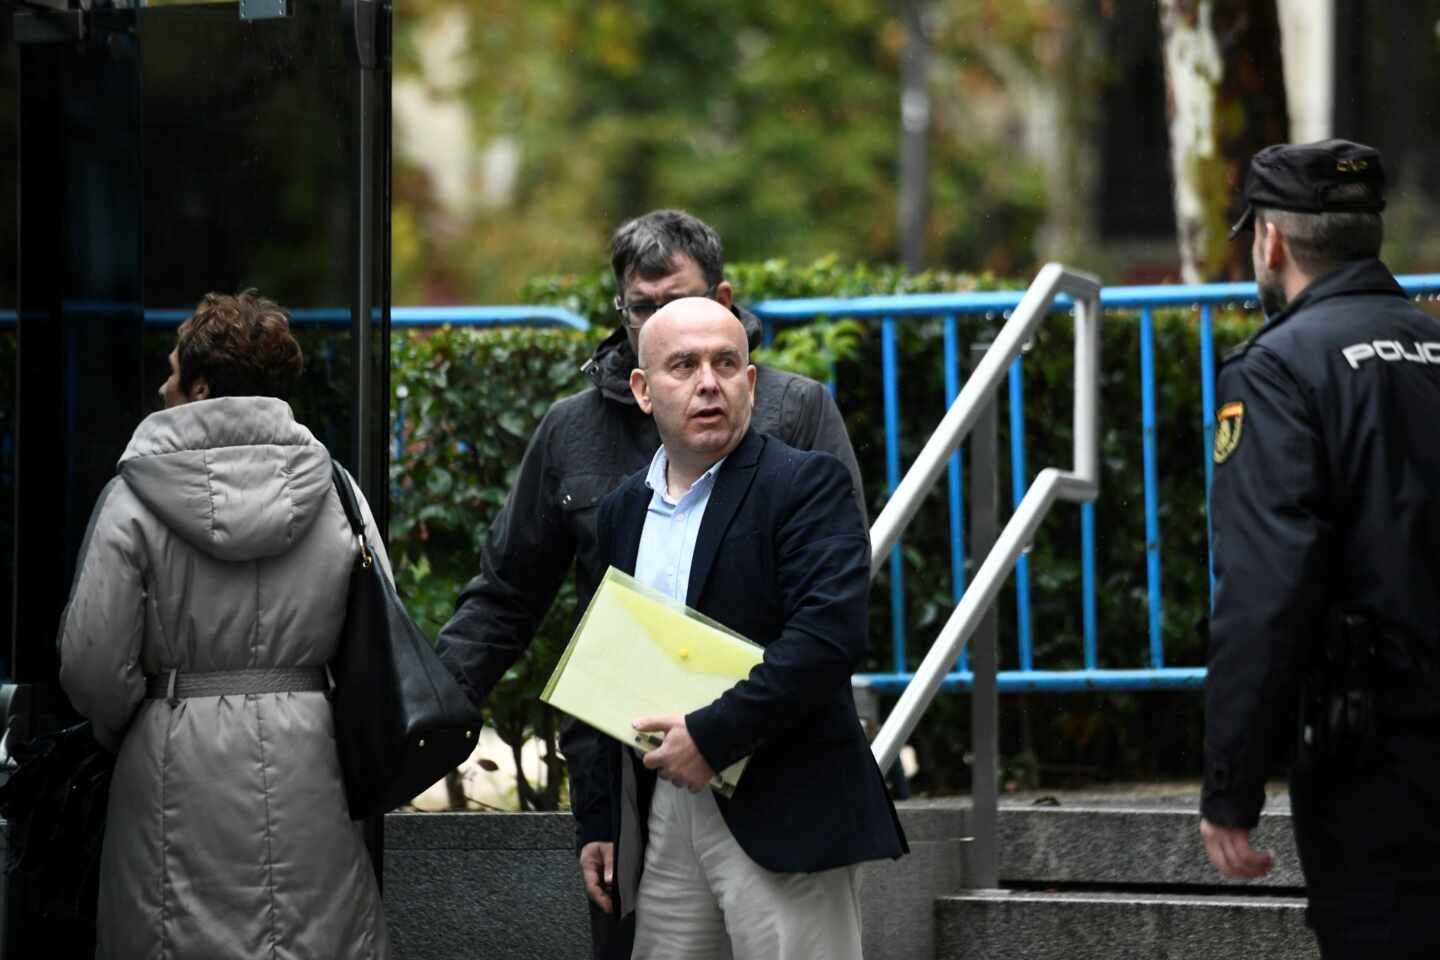 El abogado de Puigdemont, Gonzalo Boye, en libertad sin cautelares tras declarar en la Audiencia Nacional